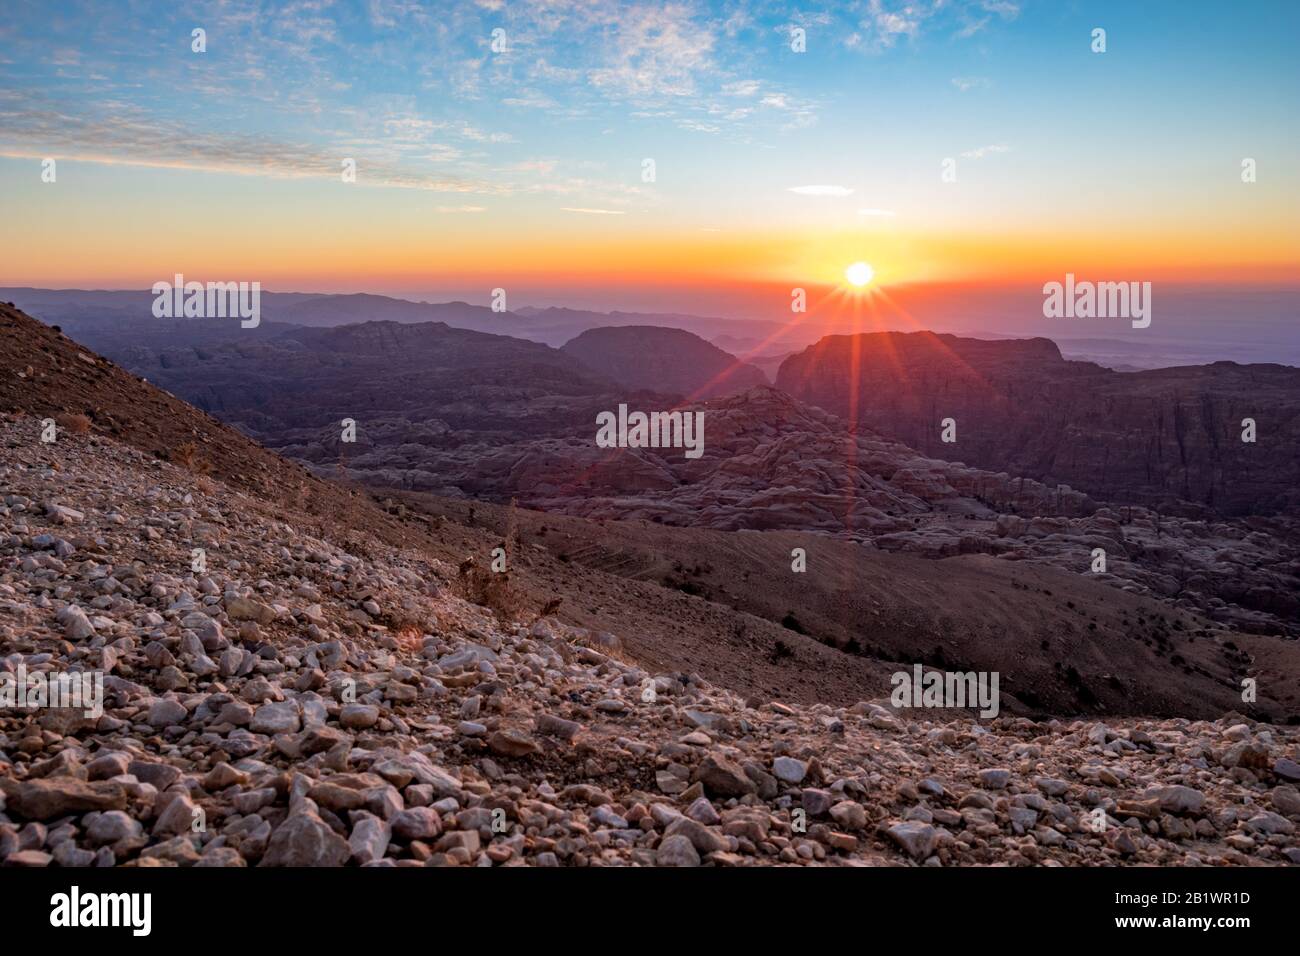 Paysage magnifique. Vue sur la montagne au coucher du soleil sur les  montagnes du désert à Wadi Musa, Royaume hachémite de Jordanie. Le bord  entre les heures d'or et de bleu Photo